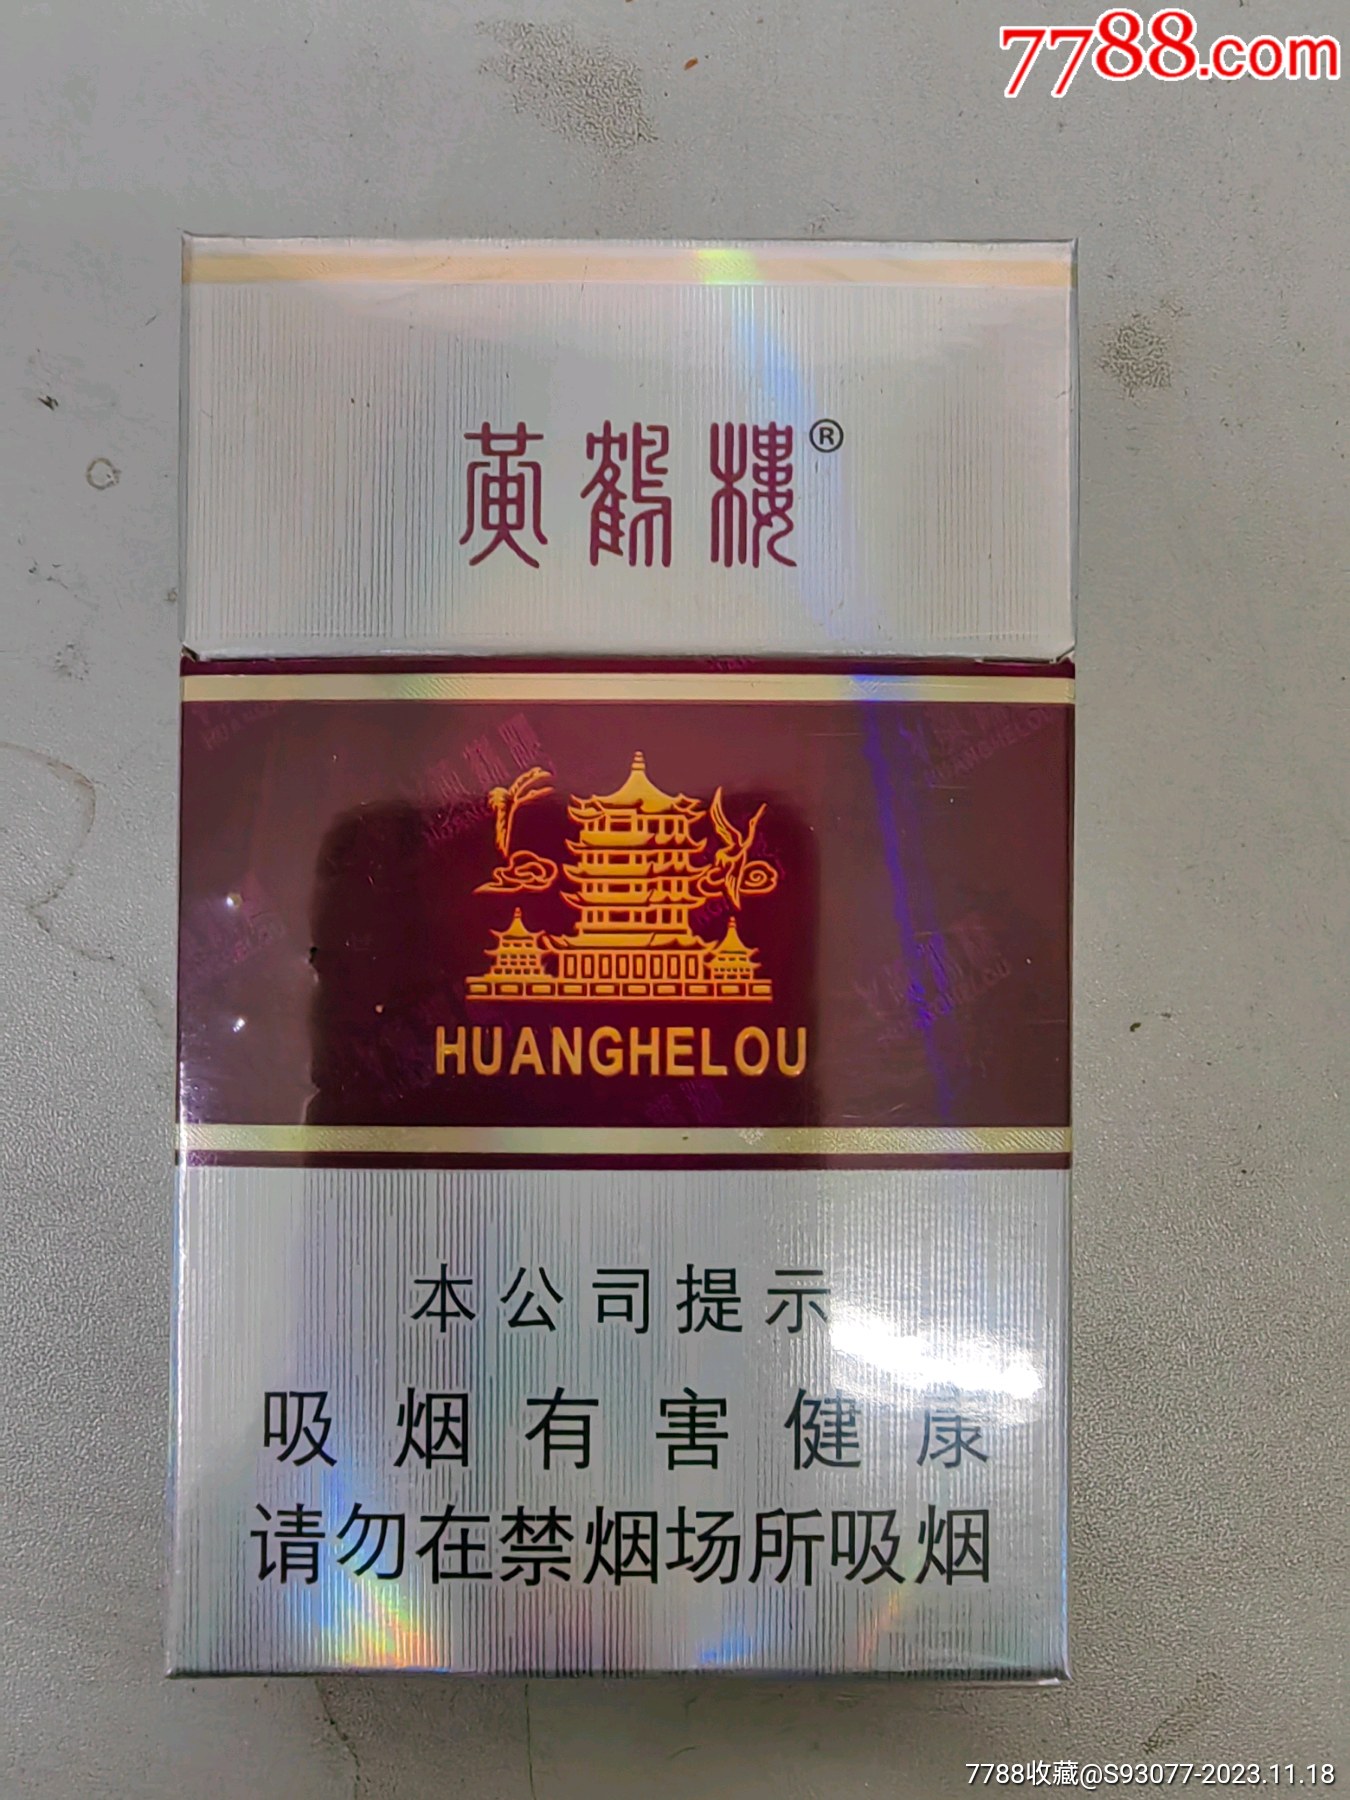 黄鹤楼香烟图片